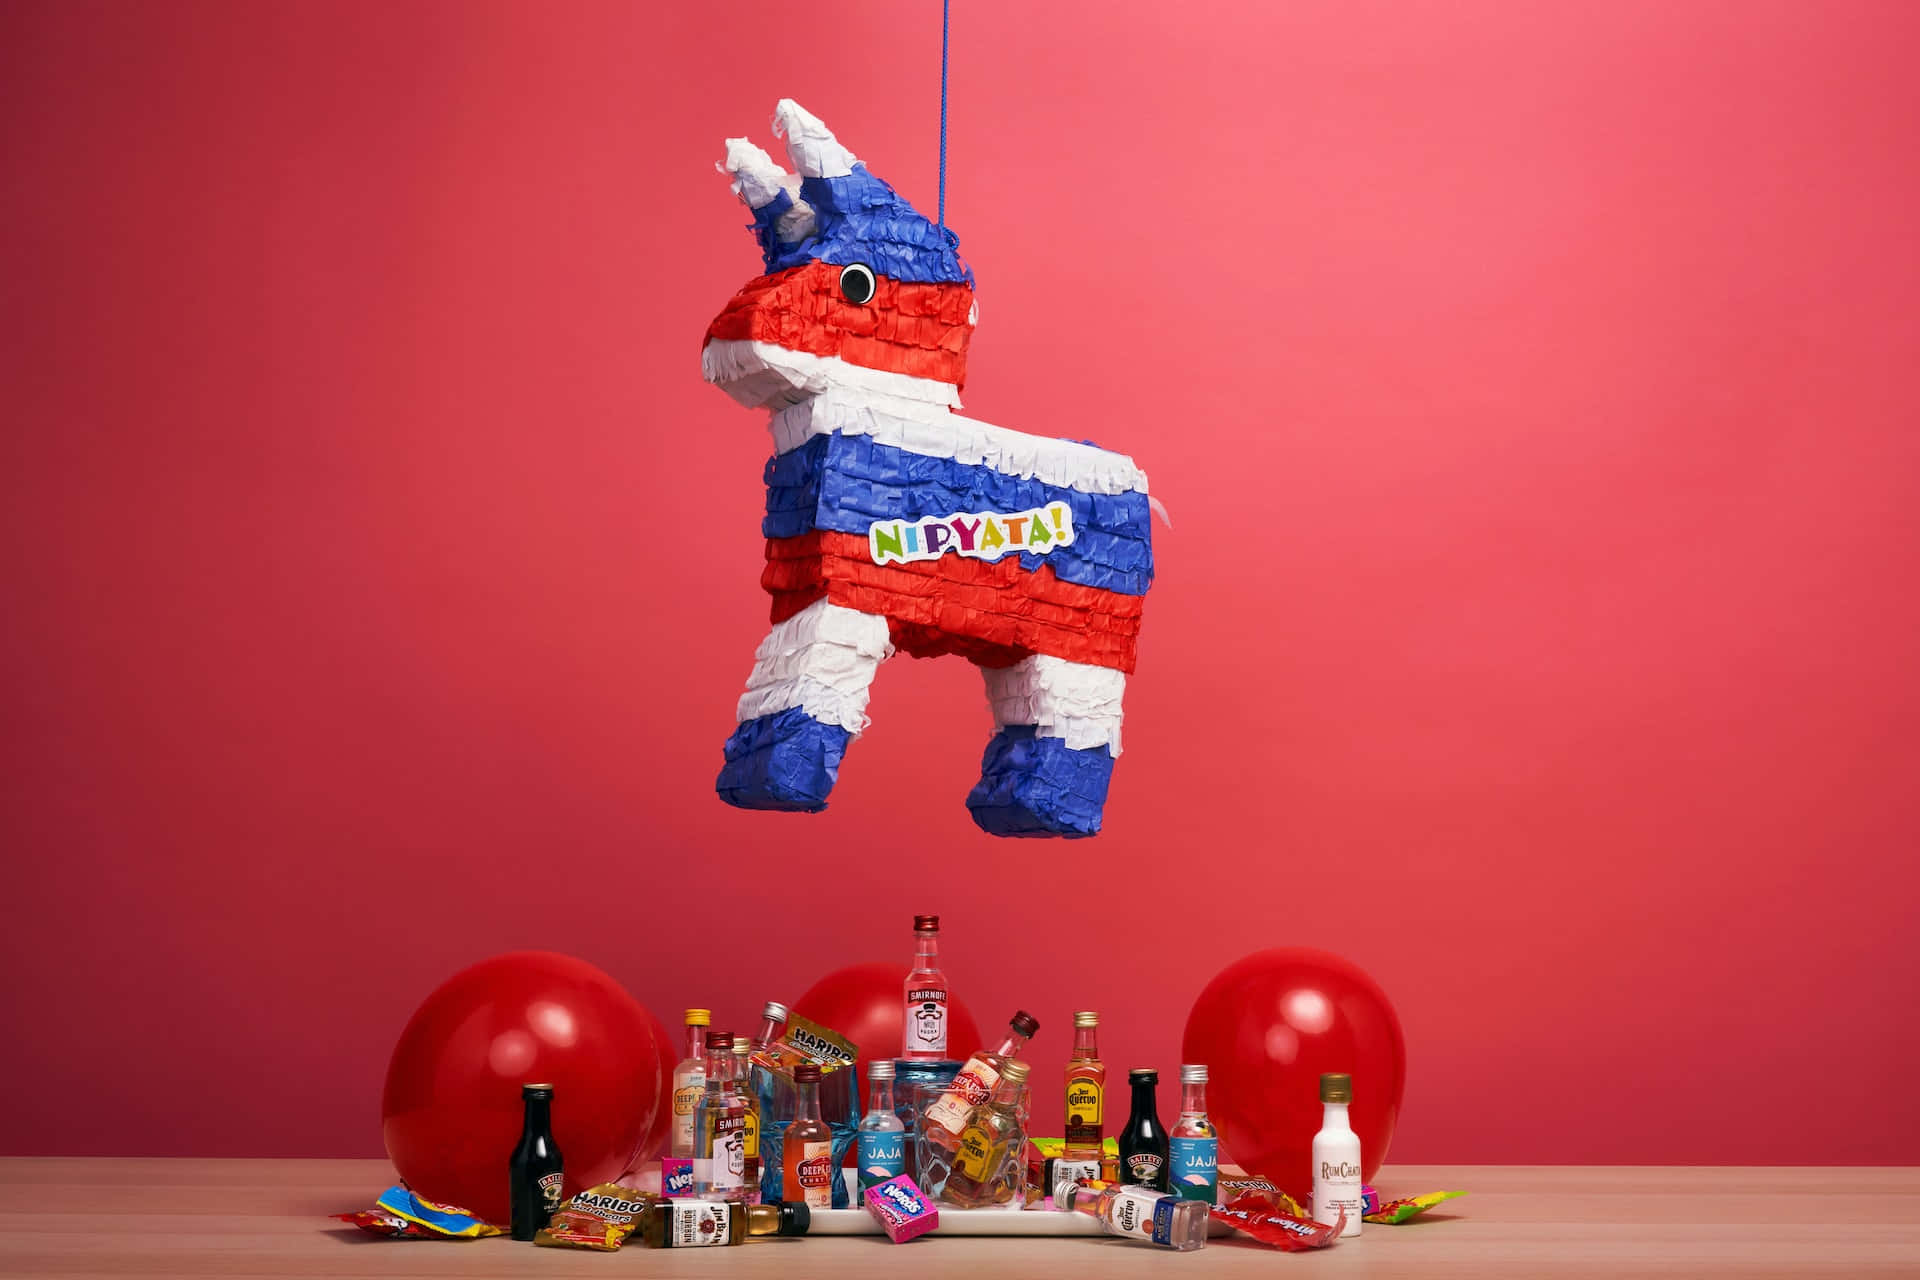 Einepiñata, Die An Einem Roten Tisch Mit Luftballons Und Getränken Hängt Wallpaper